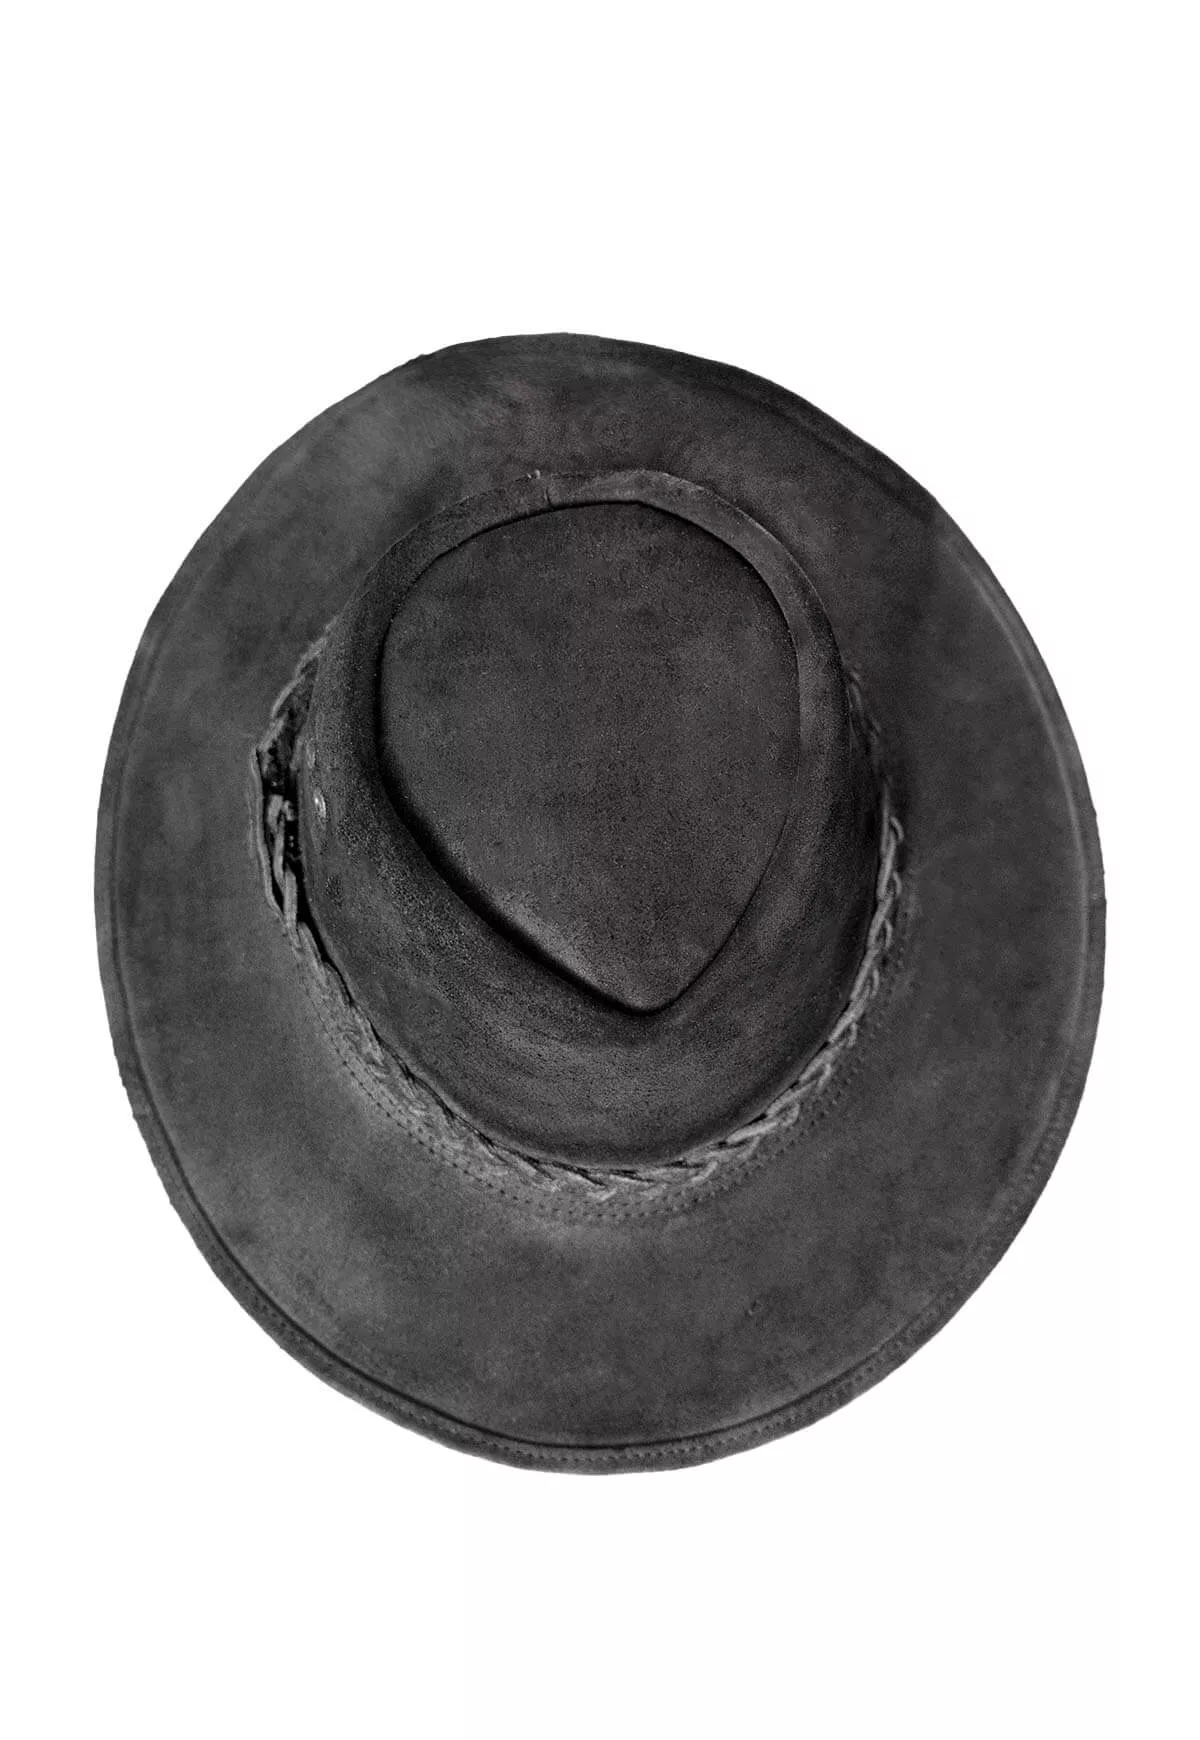 Czarny kapelusz kowbojski ze skóry bydlęcej